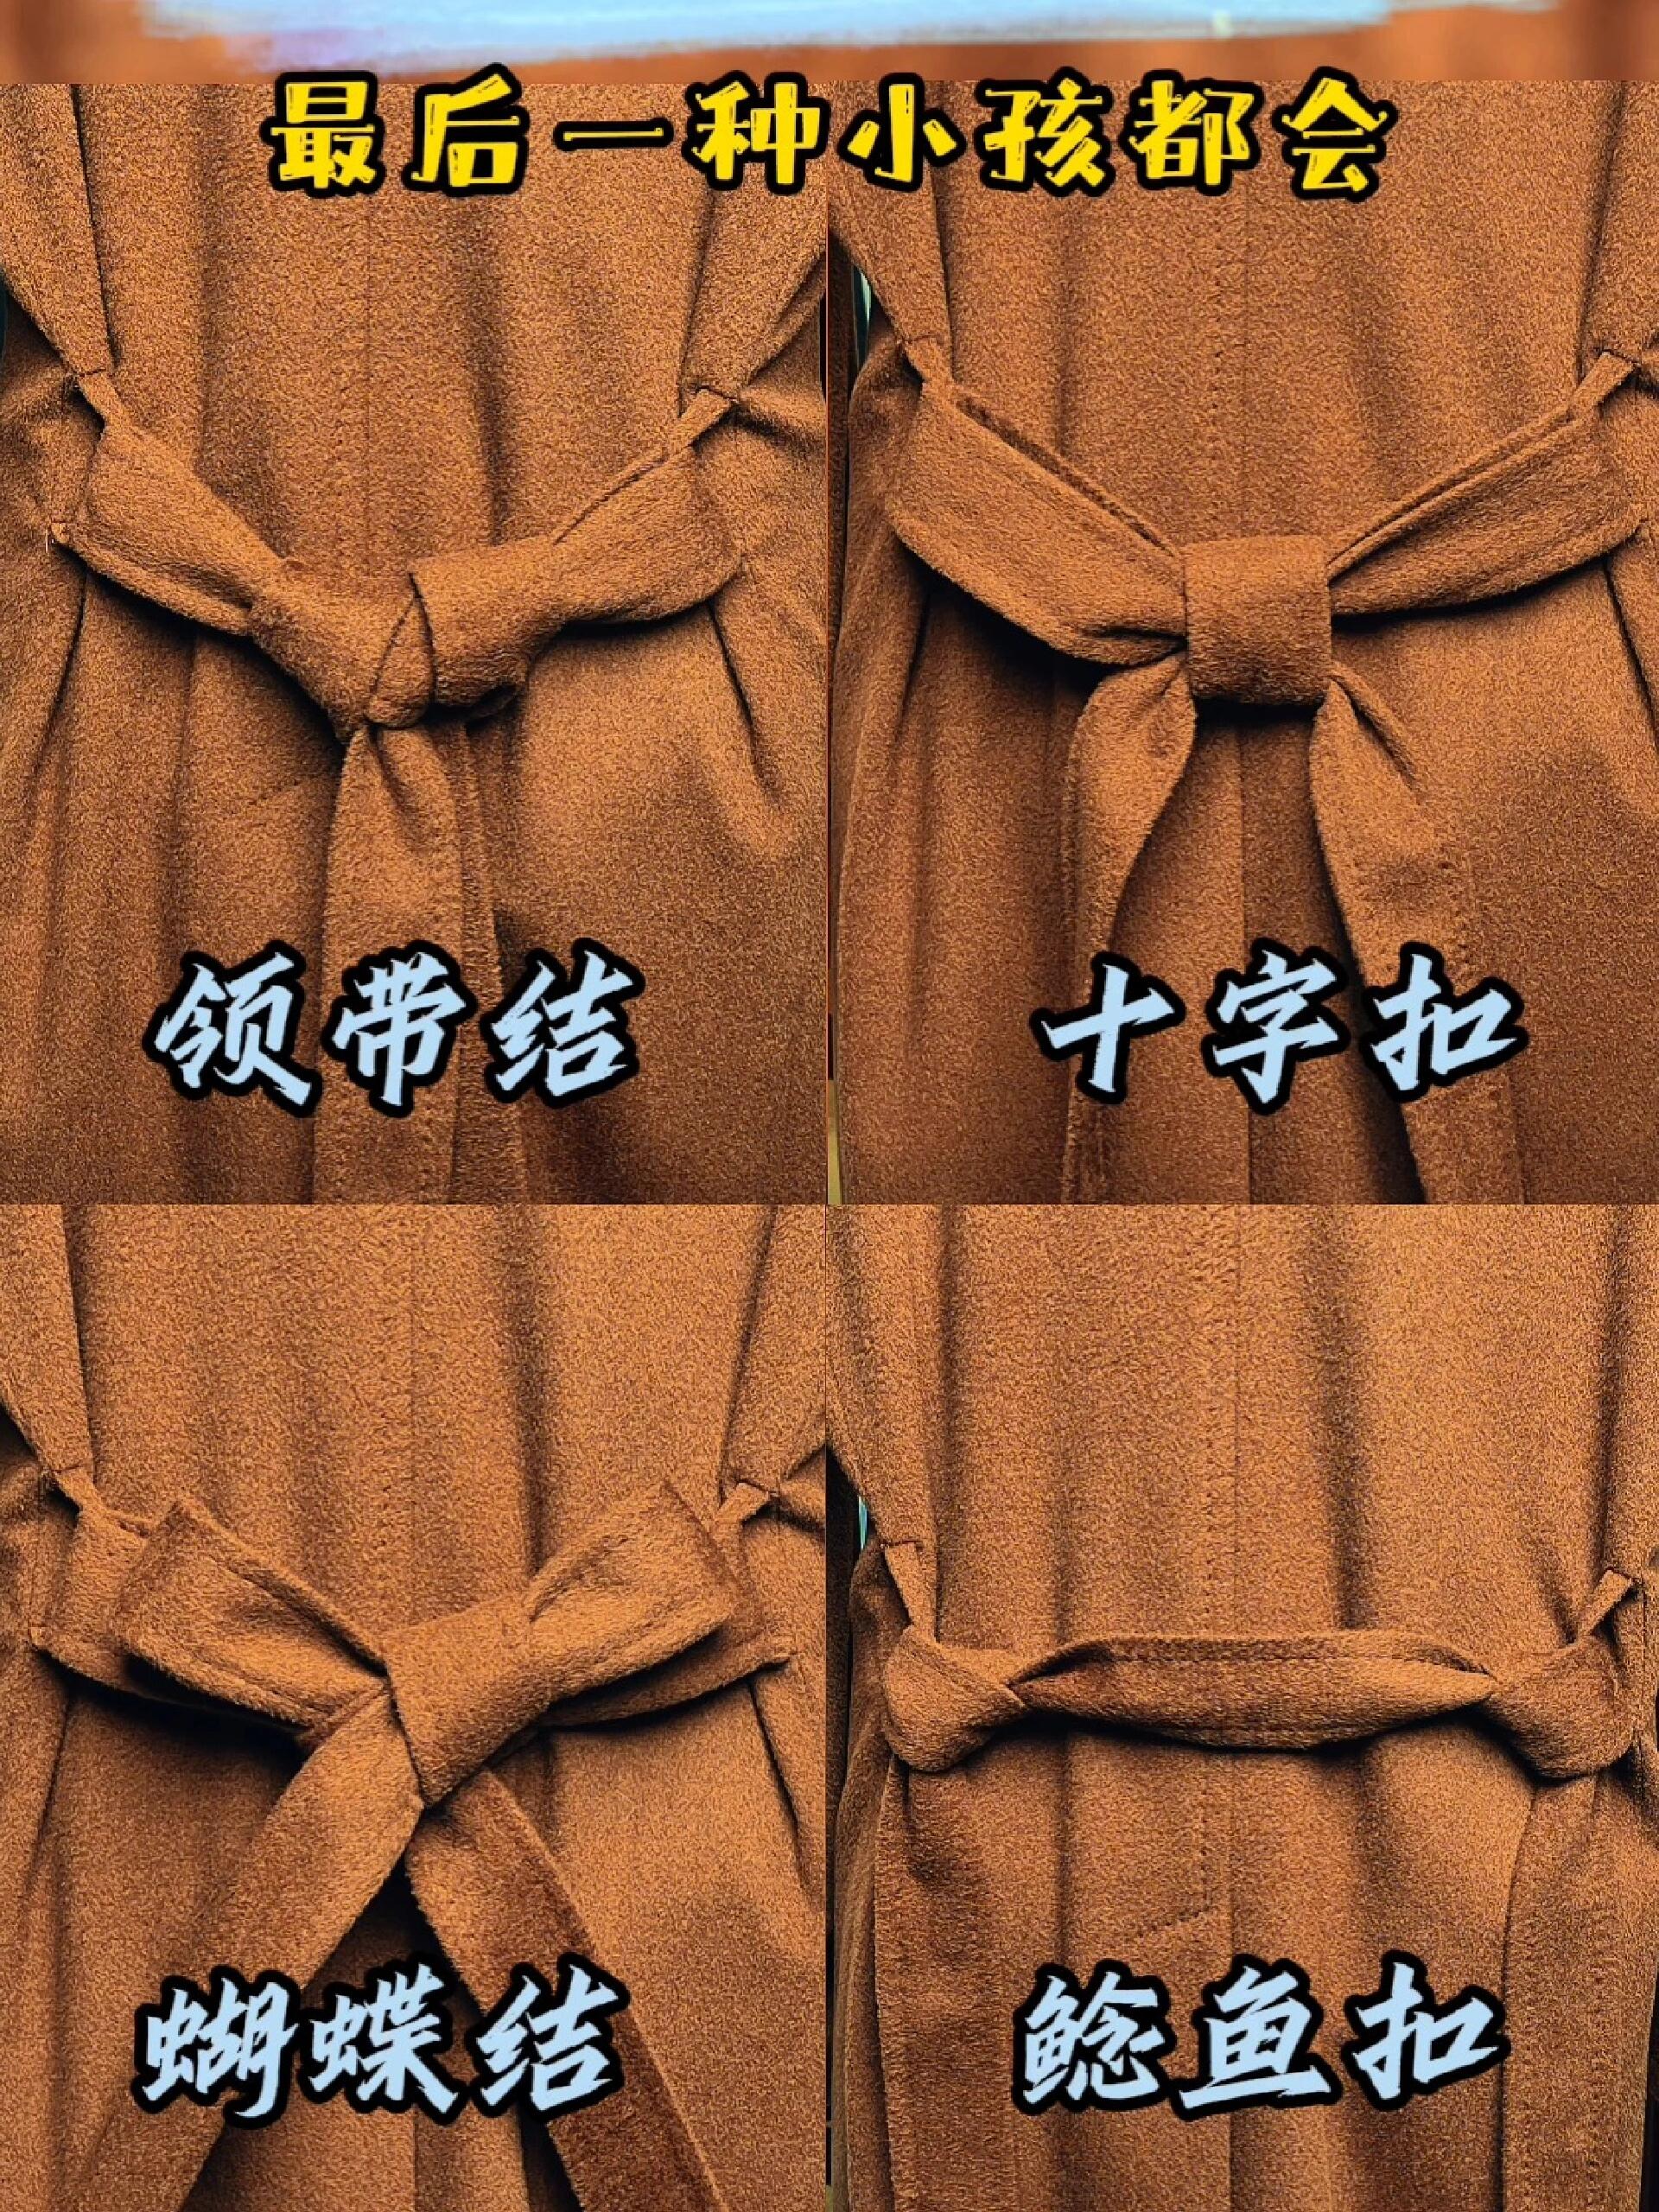 大衣腰带的系法步骤图片